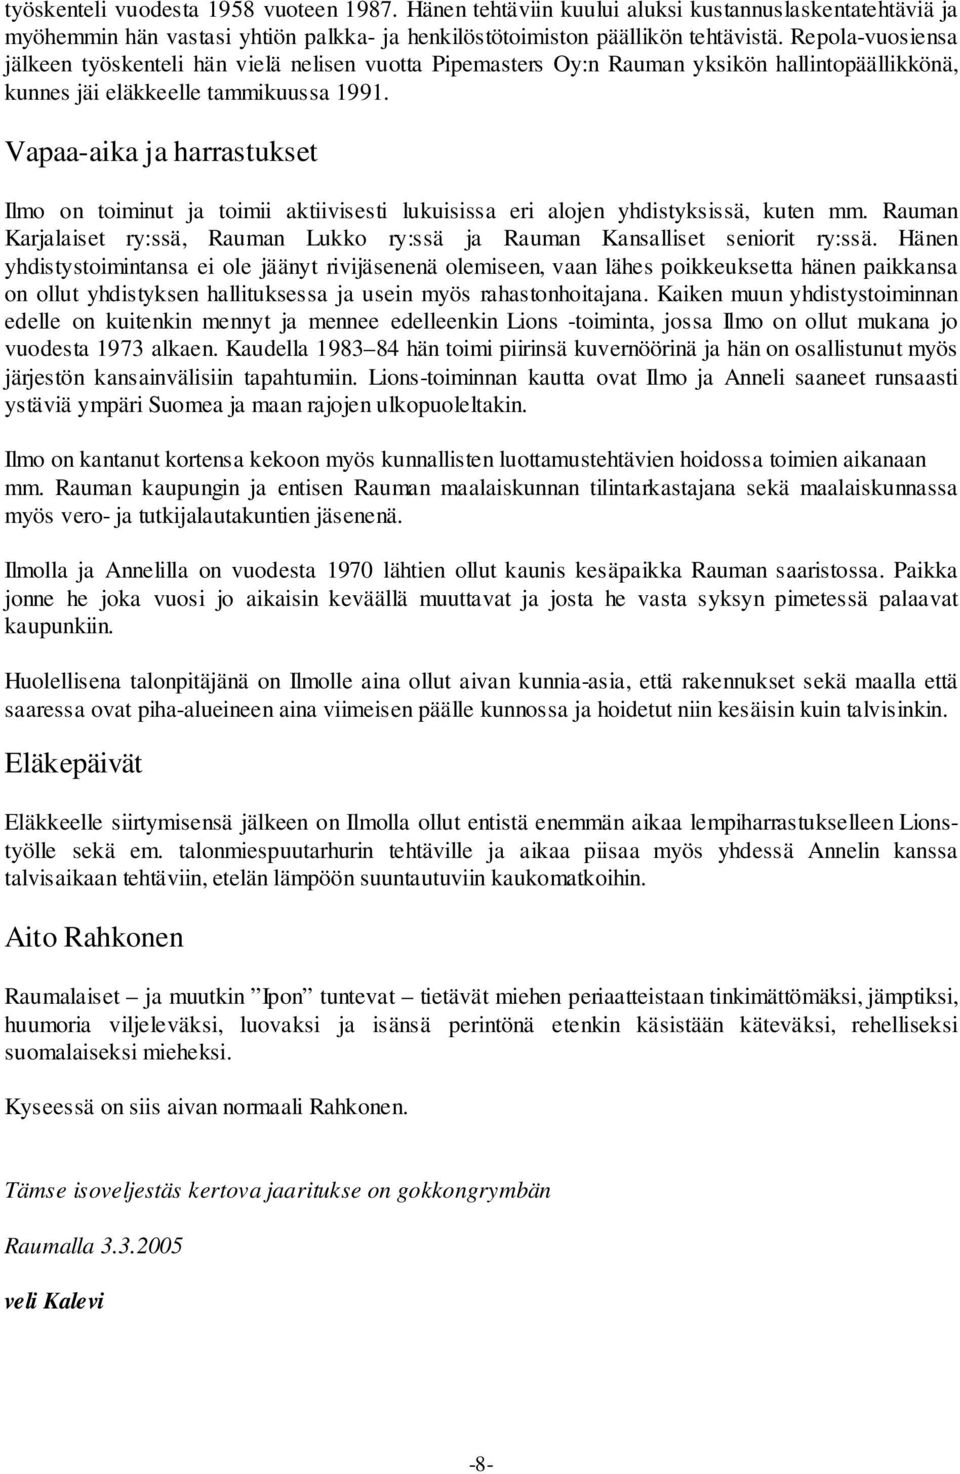 Vapaa-aika ja harrastukset Ilmo on toiminut ja toimii aktiivisesti lukuisissa eri alojen yhdistyksissä, kuten mm. Rauman Karjalaiset ry:ssä, Rauman Lukko ry:ssä ja Rauman Kansalliset seniorit ry:ssä.